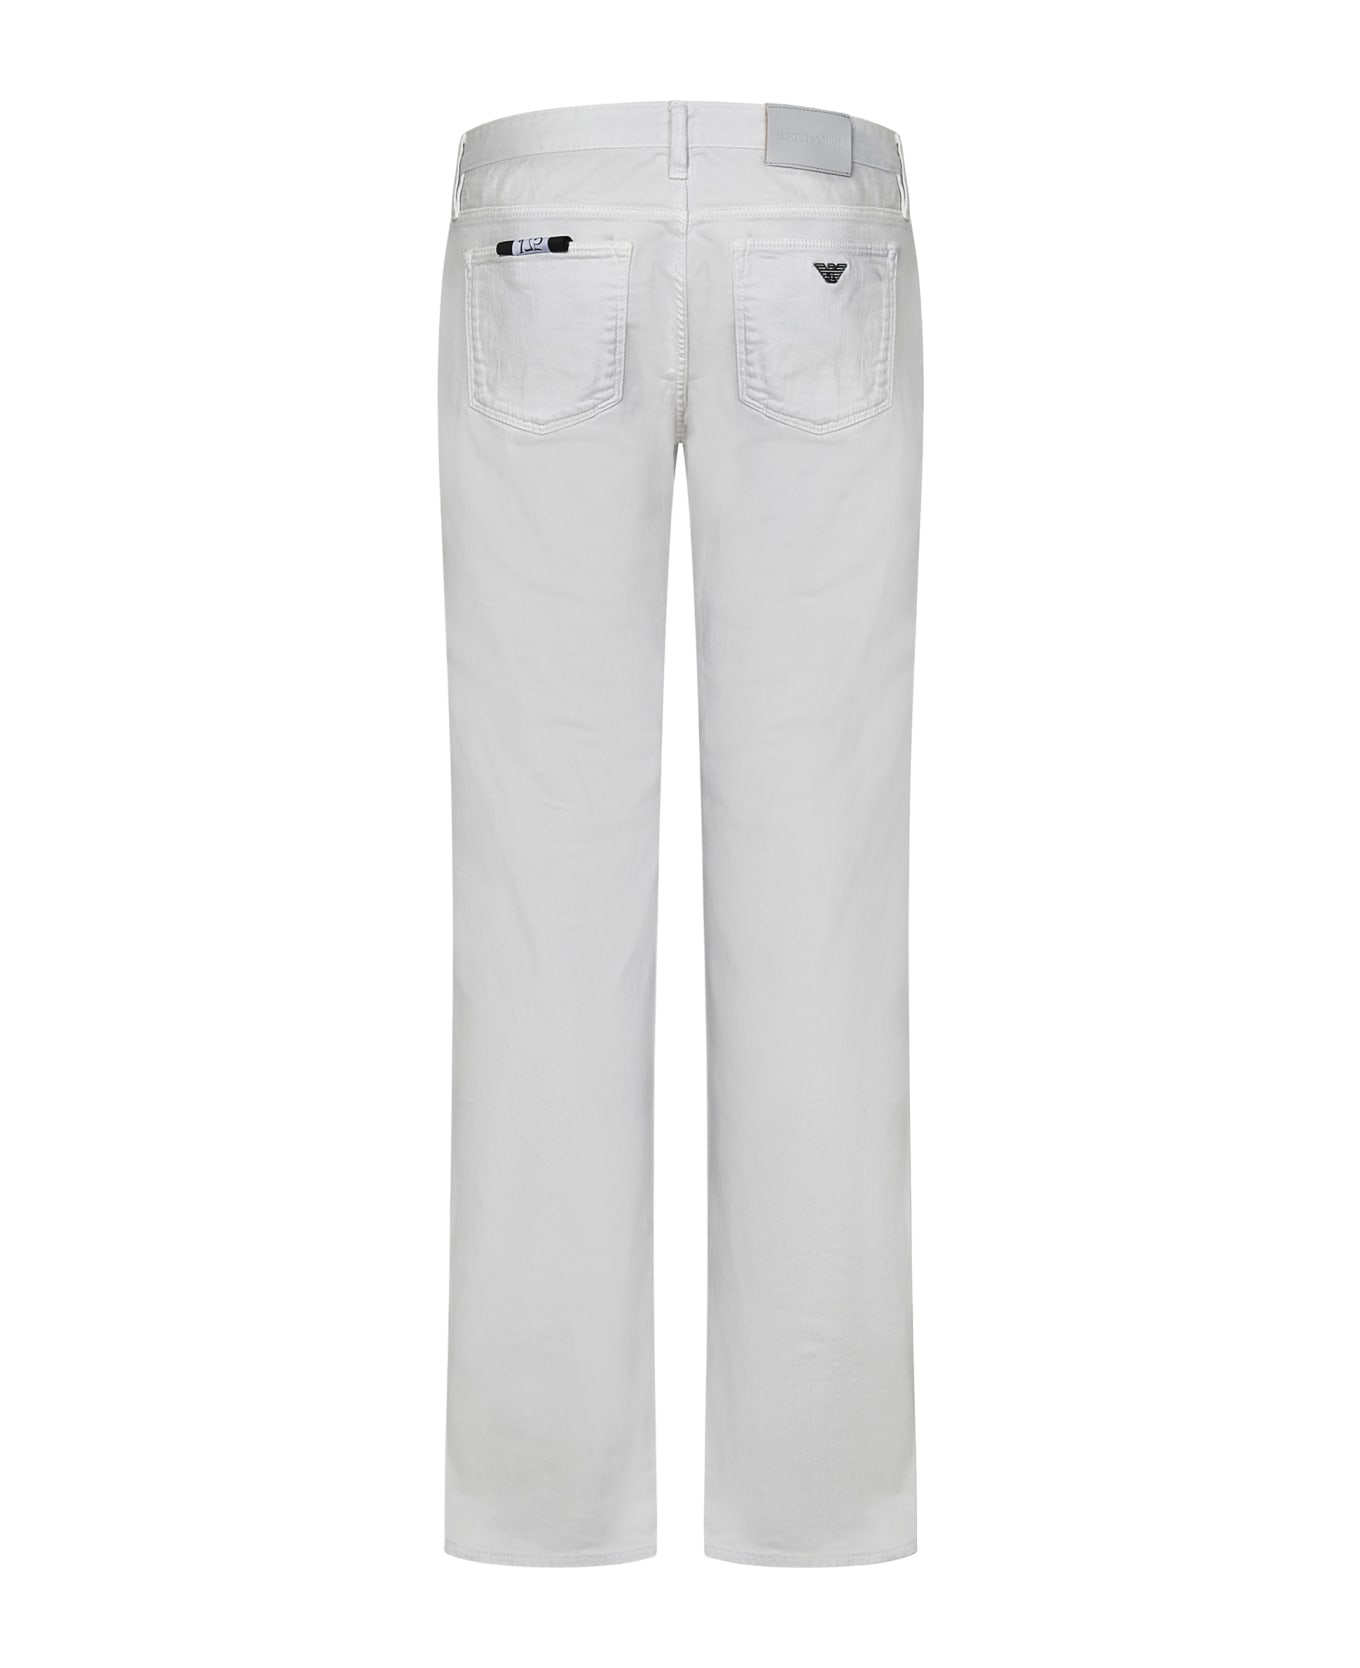 Emporio Armani J75 Jeans - White デニム